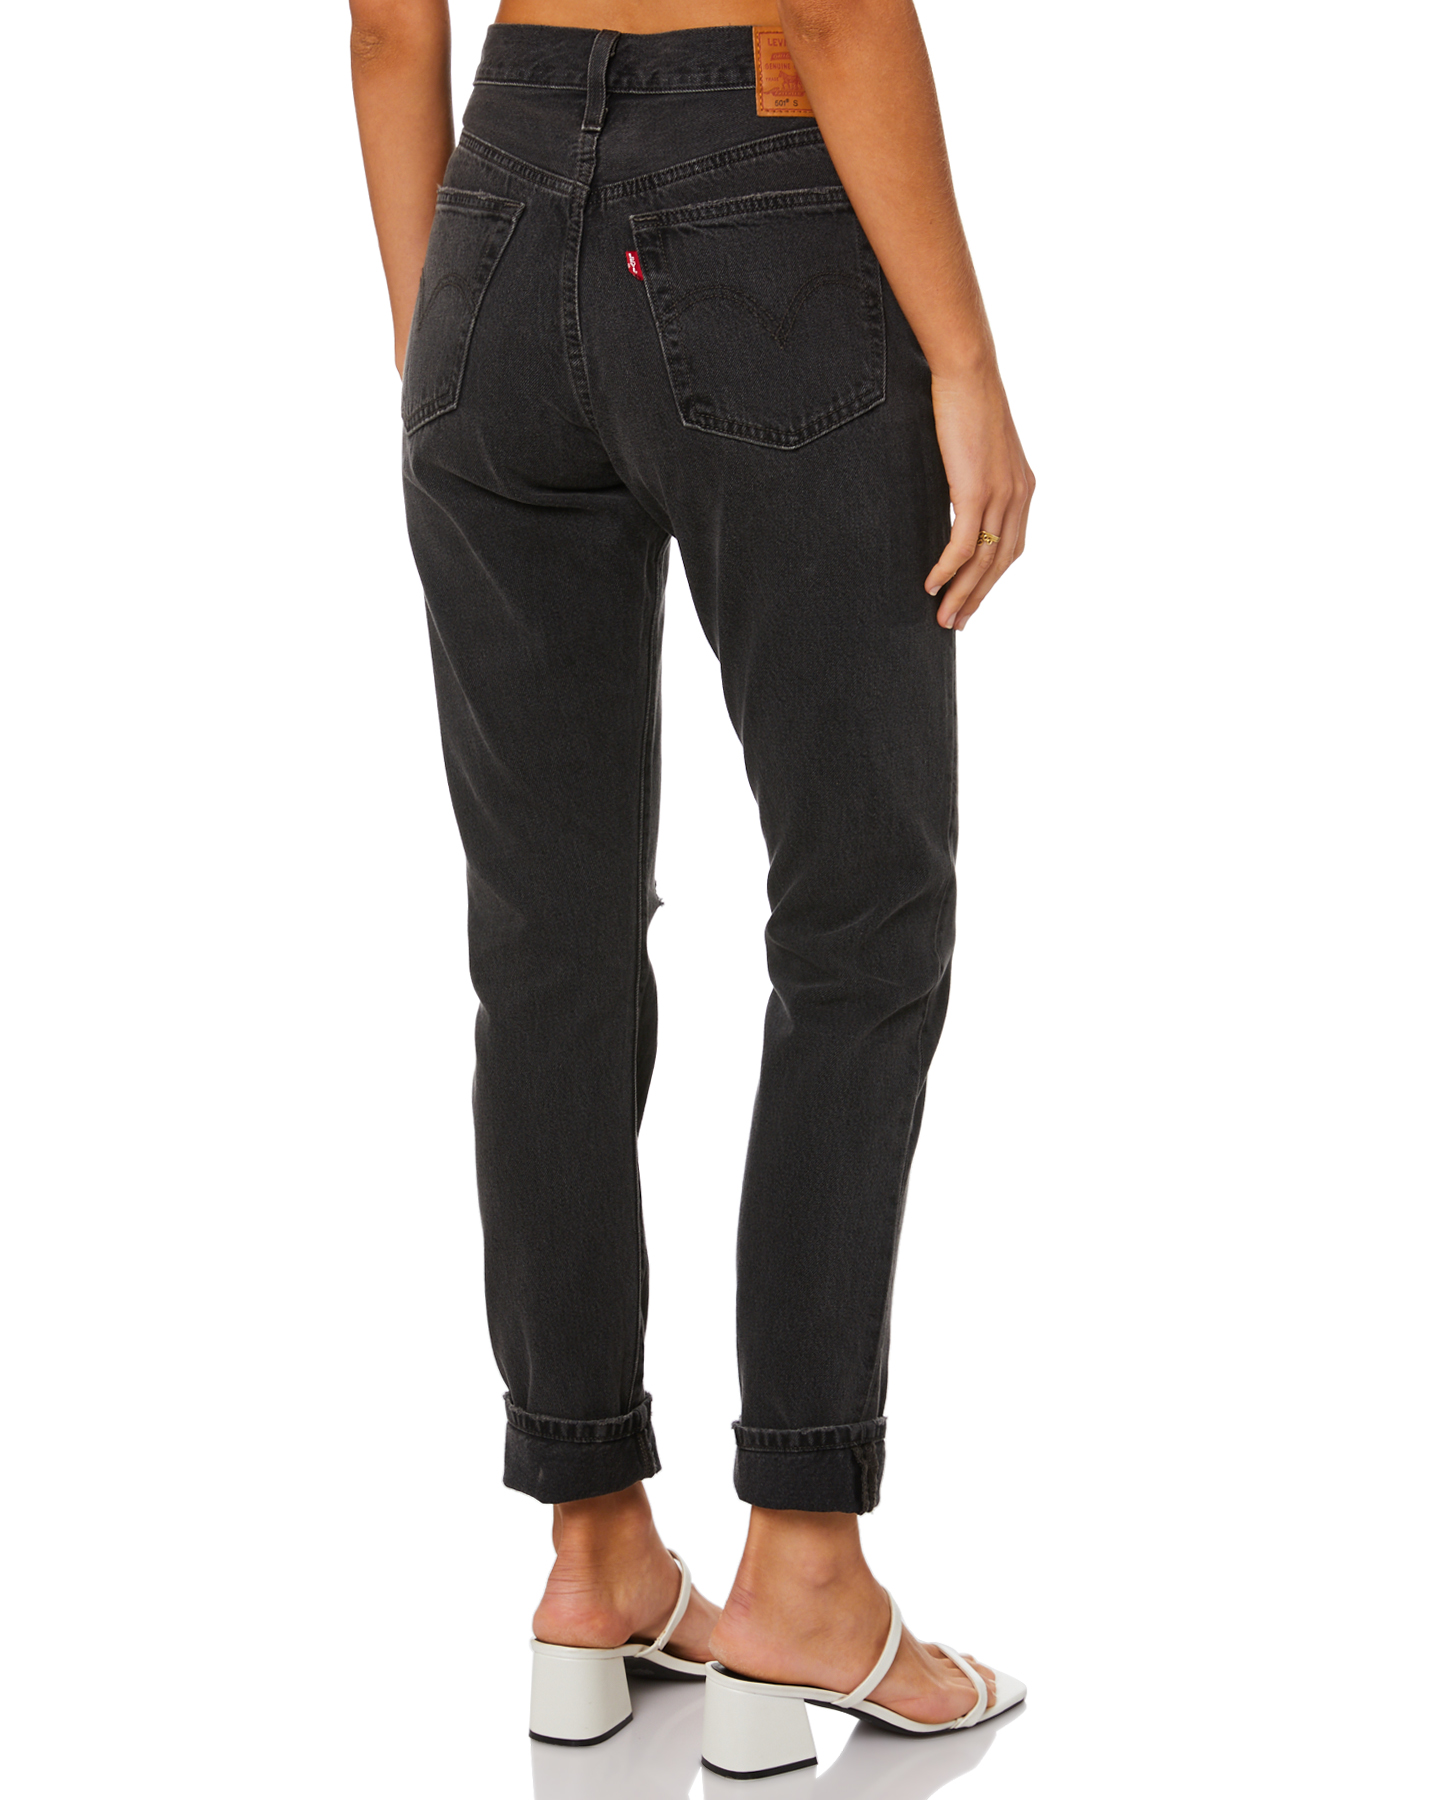 levis 501 black jeans